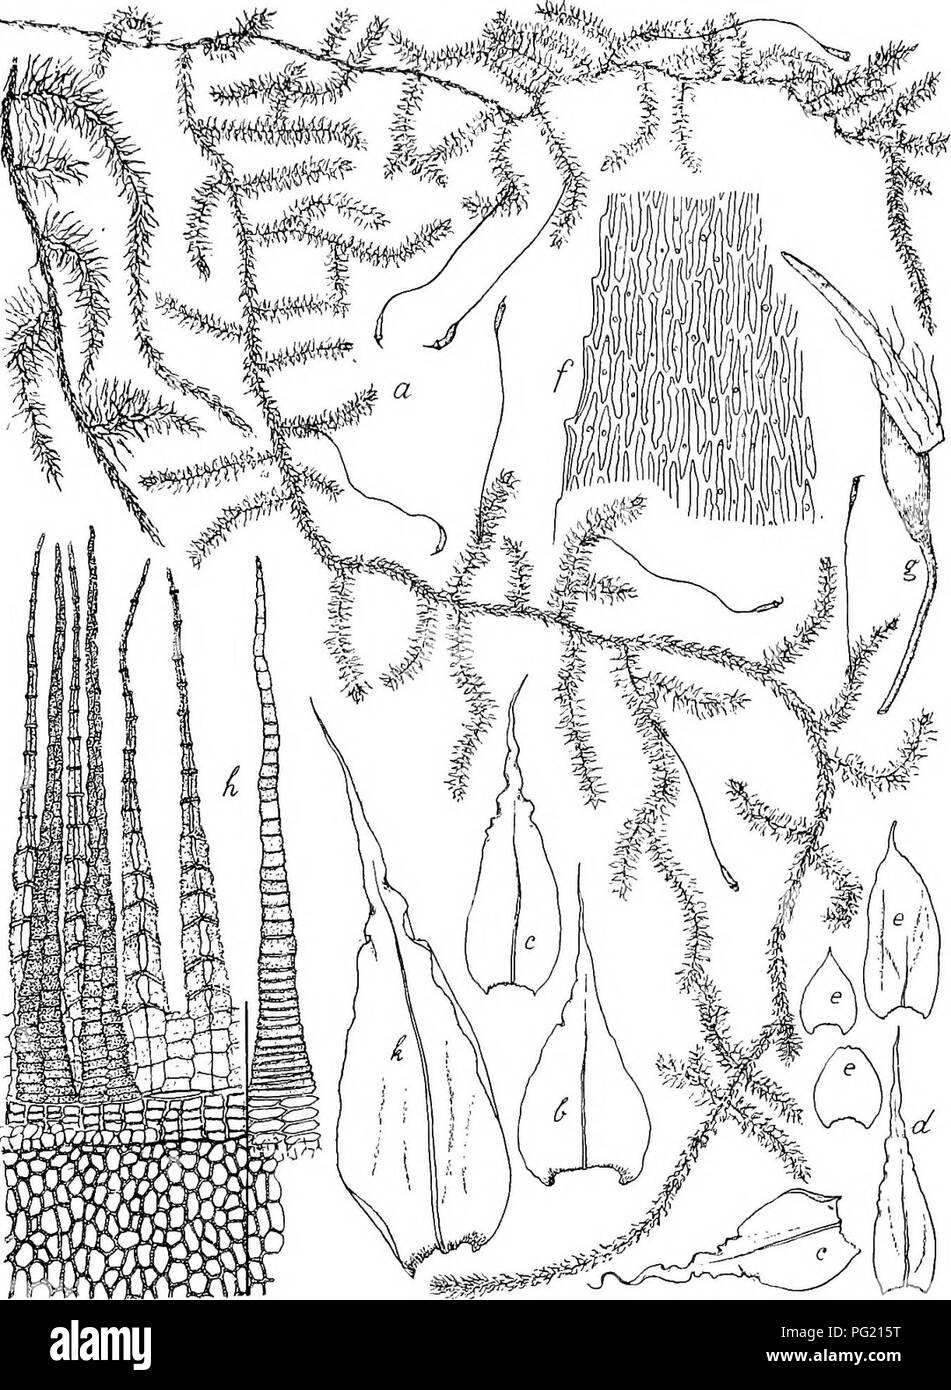 . Flore de Buitenzorg. Botany. schmallauzettlich, kiirzer oder langer fein zugespitzt, fast glatt; Astblatter meist axisgebreitet abstehend, aus breit ovalem, Fig. 142.. Aerotryopsis longissima (Dz. et Mb ) Flscii. var. JDozyana. a. Habitusbild (nalurl. Gipsse). f. Blattzellen ^. h. Stengelblatt.&quot; '-,?• 9- Sporogon V- c. Astblatter '/• ^- Pei-istom ——. d. IMederblatt. 'j*. i. Sec. Stengelstiick der v a v. e. Grundastblattei- Y • gigantea Flsoh. (nat. Grosse). k. Astblatt. '/• abgerundetem Grunde allmahlich in eine sehr lange, geschlan-. Please note that these images are extracted from sc Stock Photo